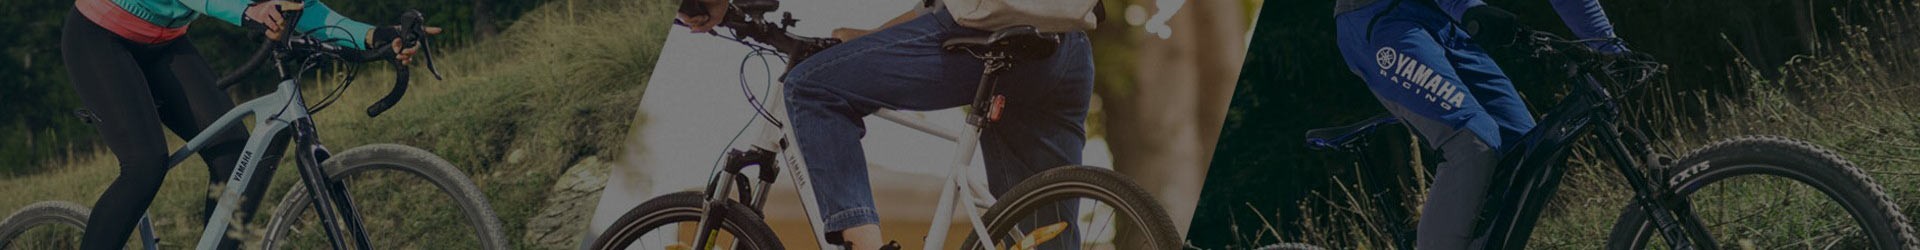 YAMAHA | Casque vélo VTT IXS | Gamme officielle construteur